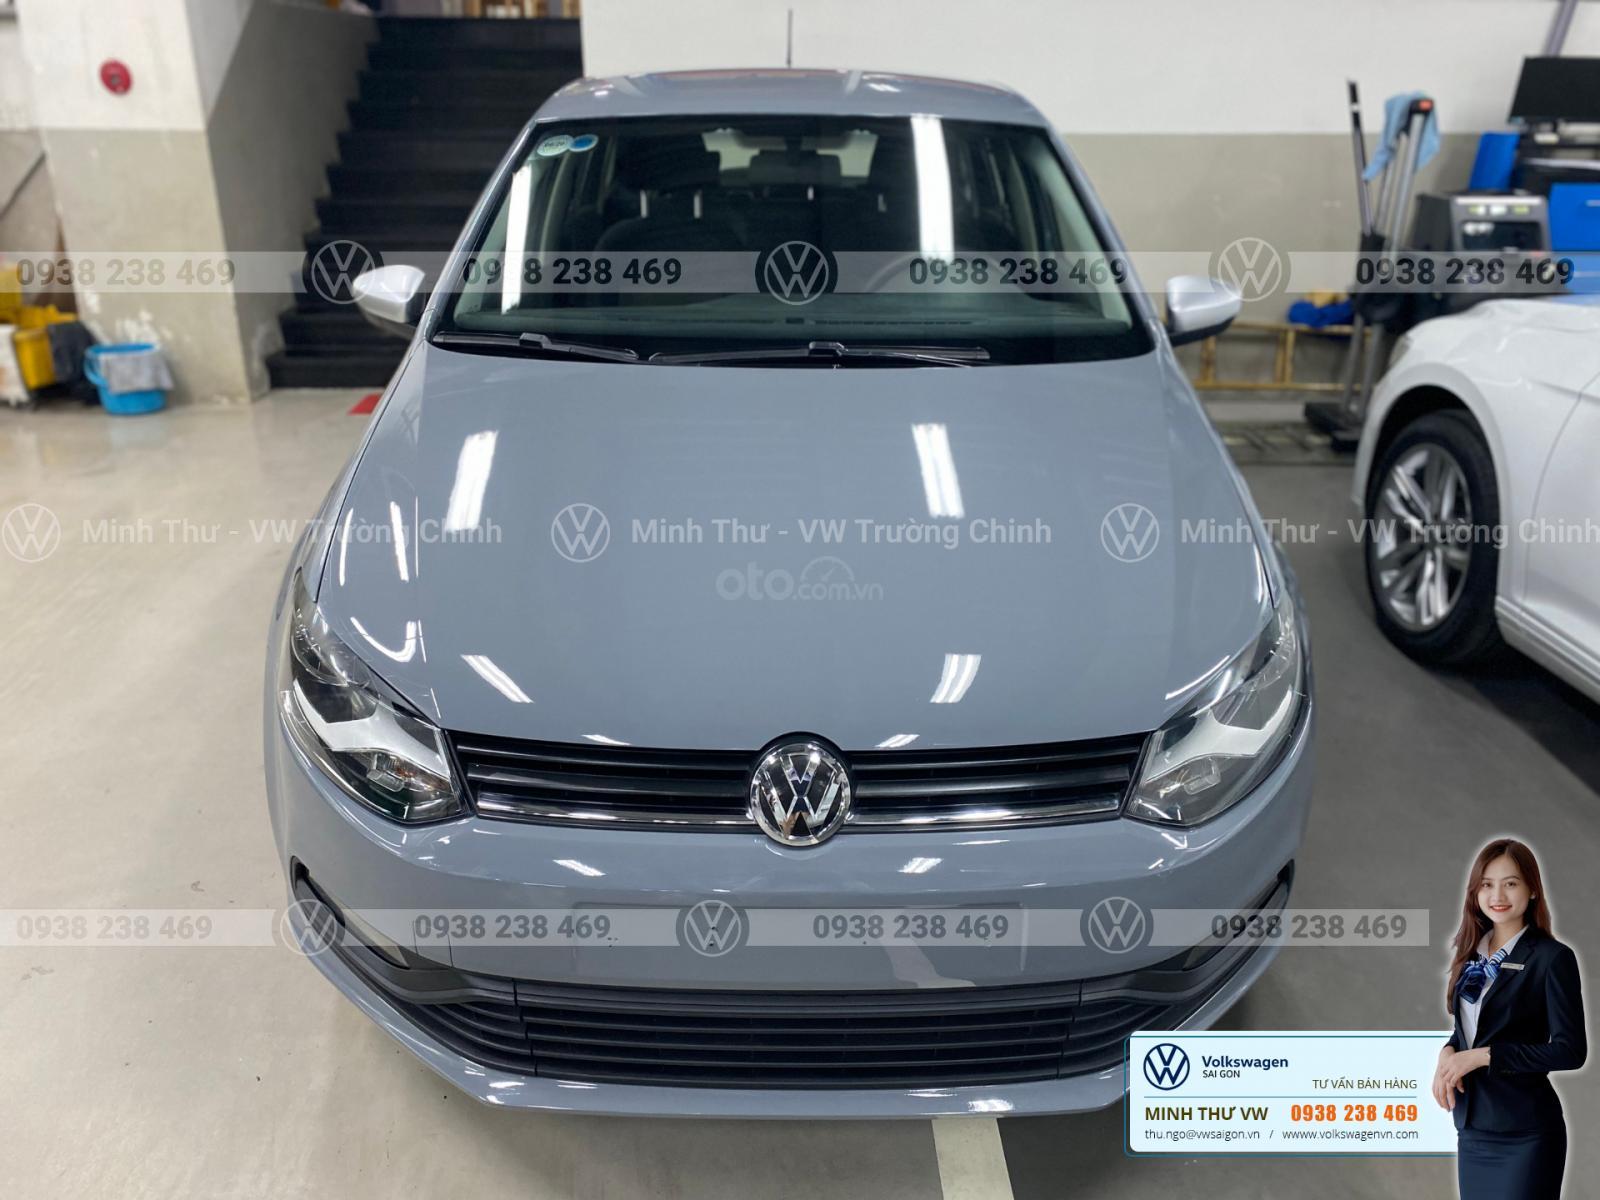 Volkswagen Polo 2016: Volkswagen Polo 2016, chiếc xe nổi tiếng của hãng xe Đức với thiết kế nhỏ gọn, tiện nghi và động cơ mạnh mẽ. Với nhiều tính năng hiện đại và tiết kiệm nhiên liệu, chiếc xe này là lựa chọn tuyệt vời cho những người yêu xe. Hãy xem hình ảnh chiếc xe này để cảm nhận được sự khác biệt và tiện lợi mà nó mang lại.